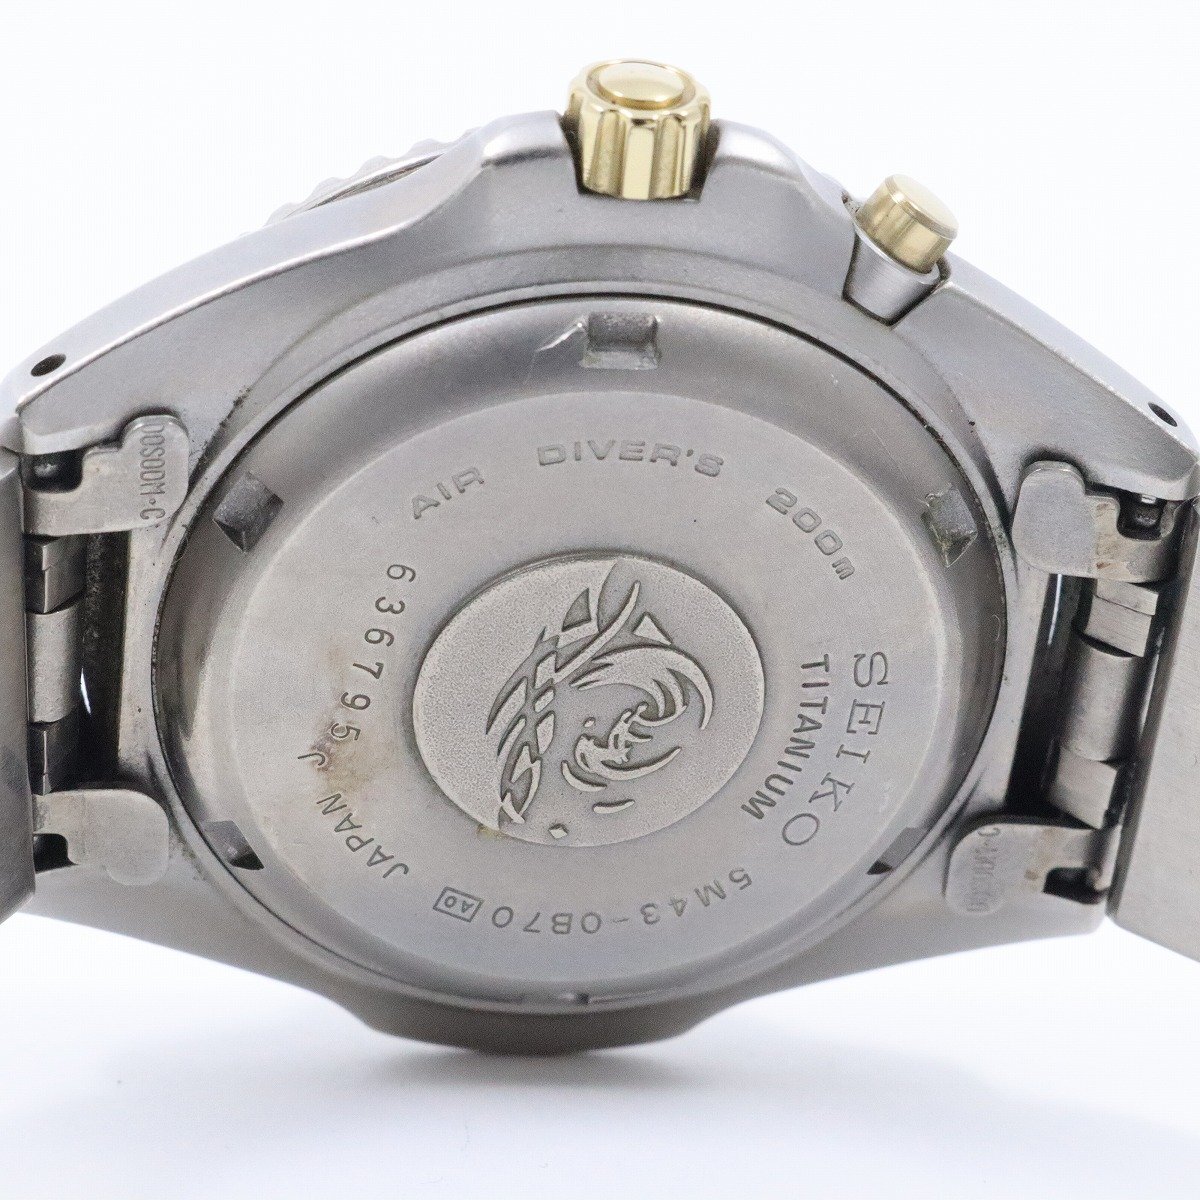 【訳あり品】SEIKO セイコー スクーバ200M AGS メンズ 腕時計 デイデイト チタン ゴールド系文字盤 純正ベルト 5M43-0B70【いおき質店】_画像9